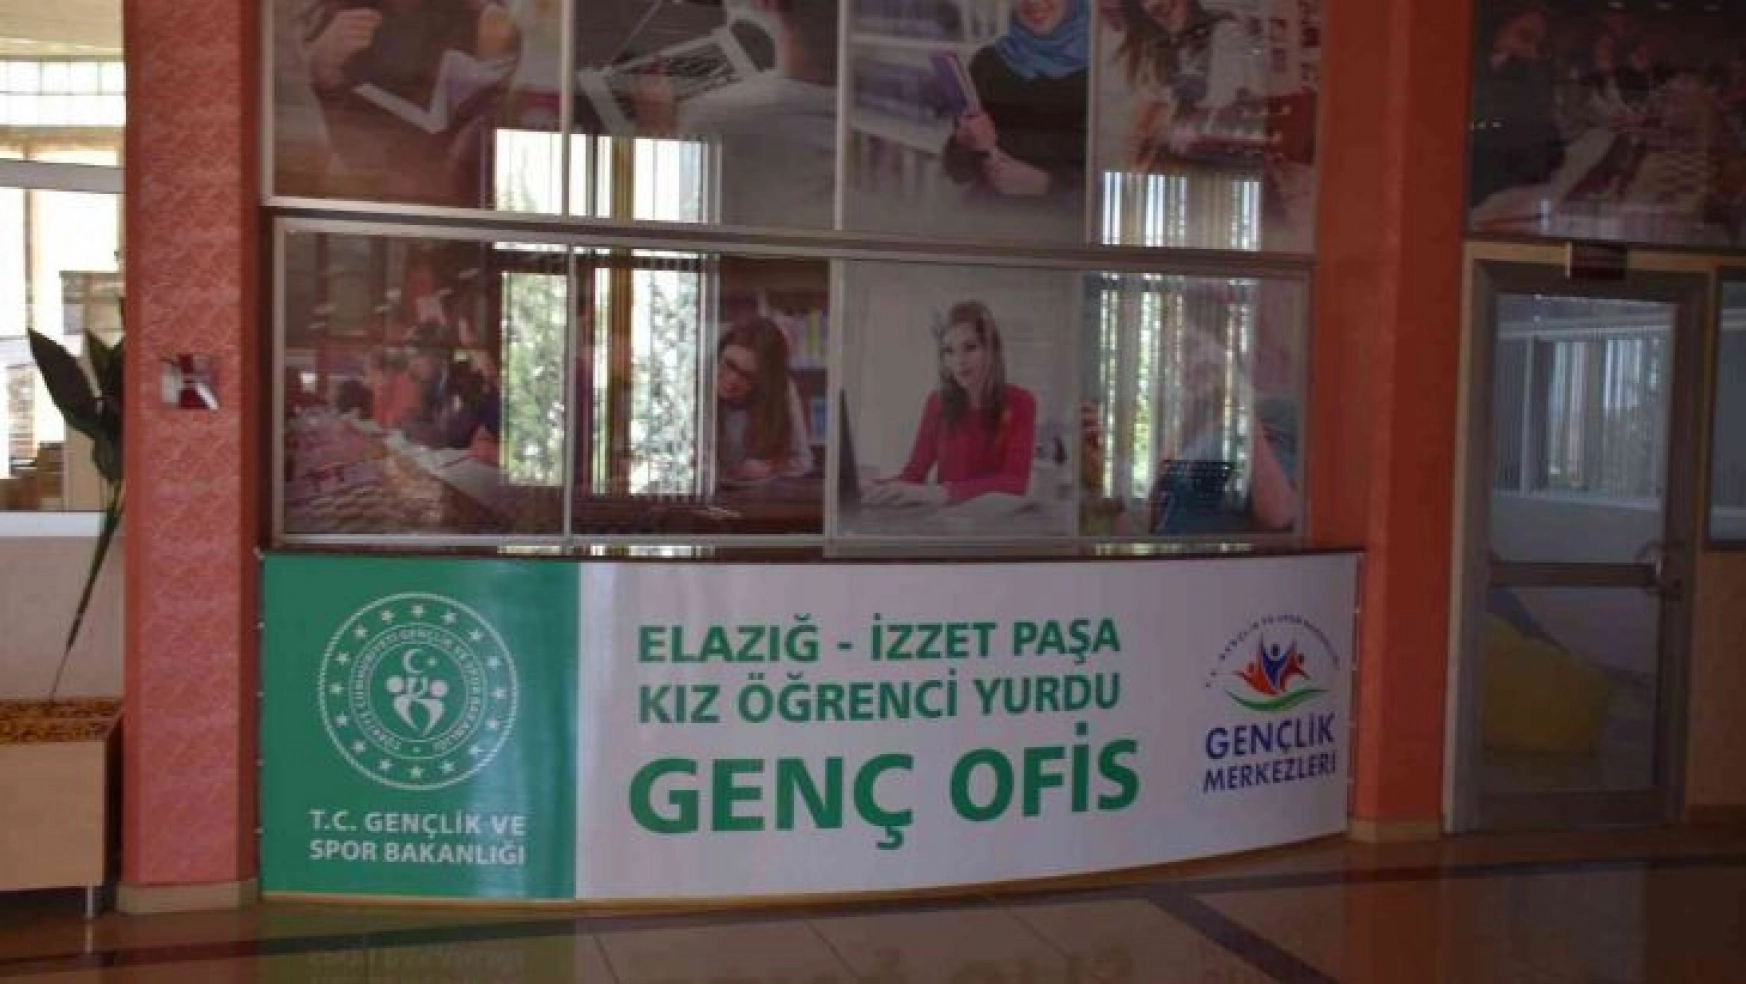 Elazığ'da çeşitli kurumlara genç ofisleri açıldı